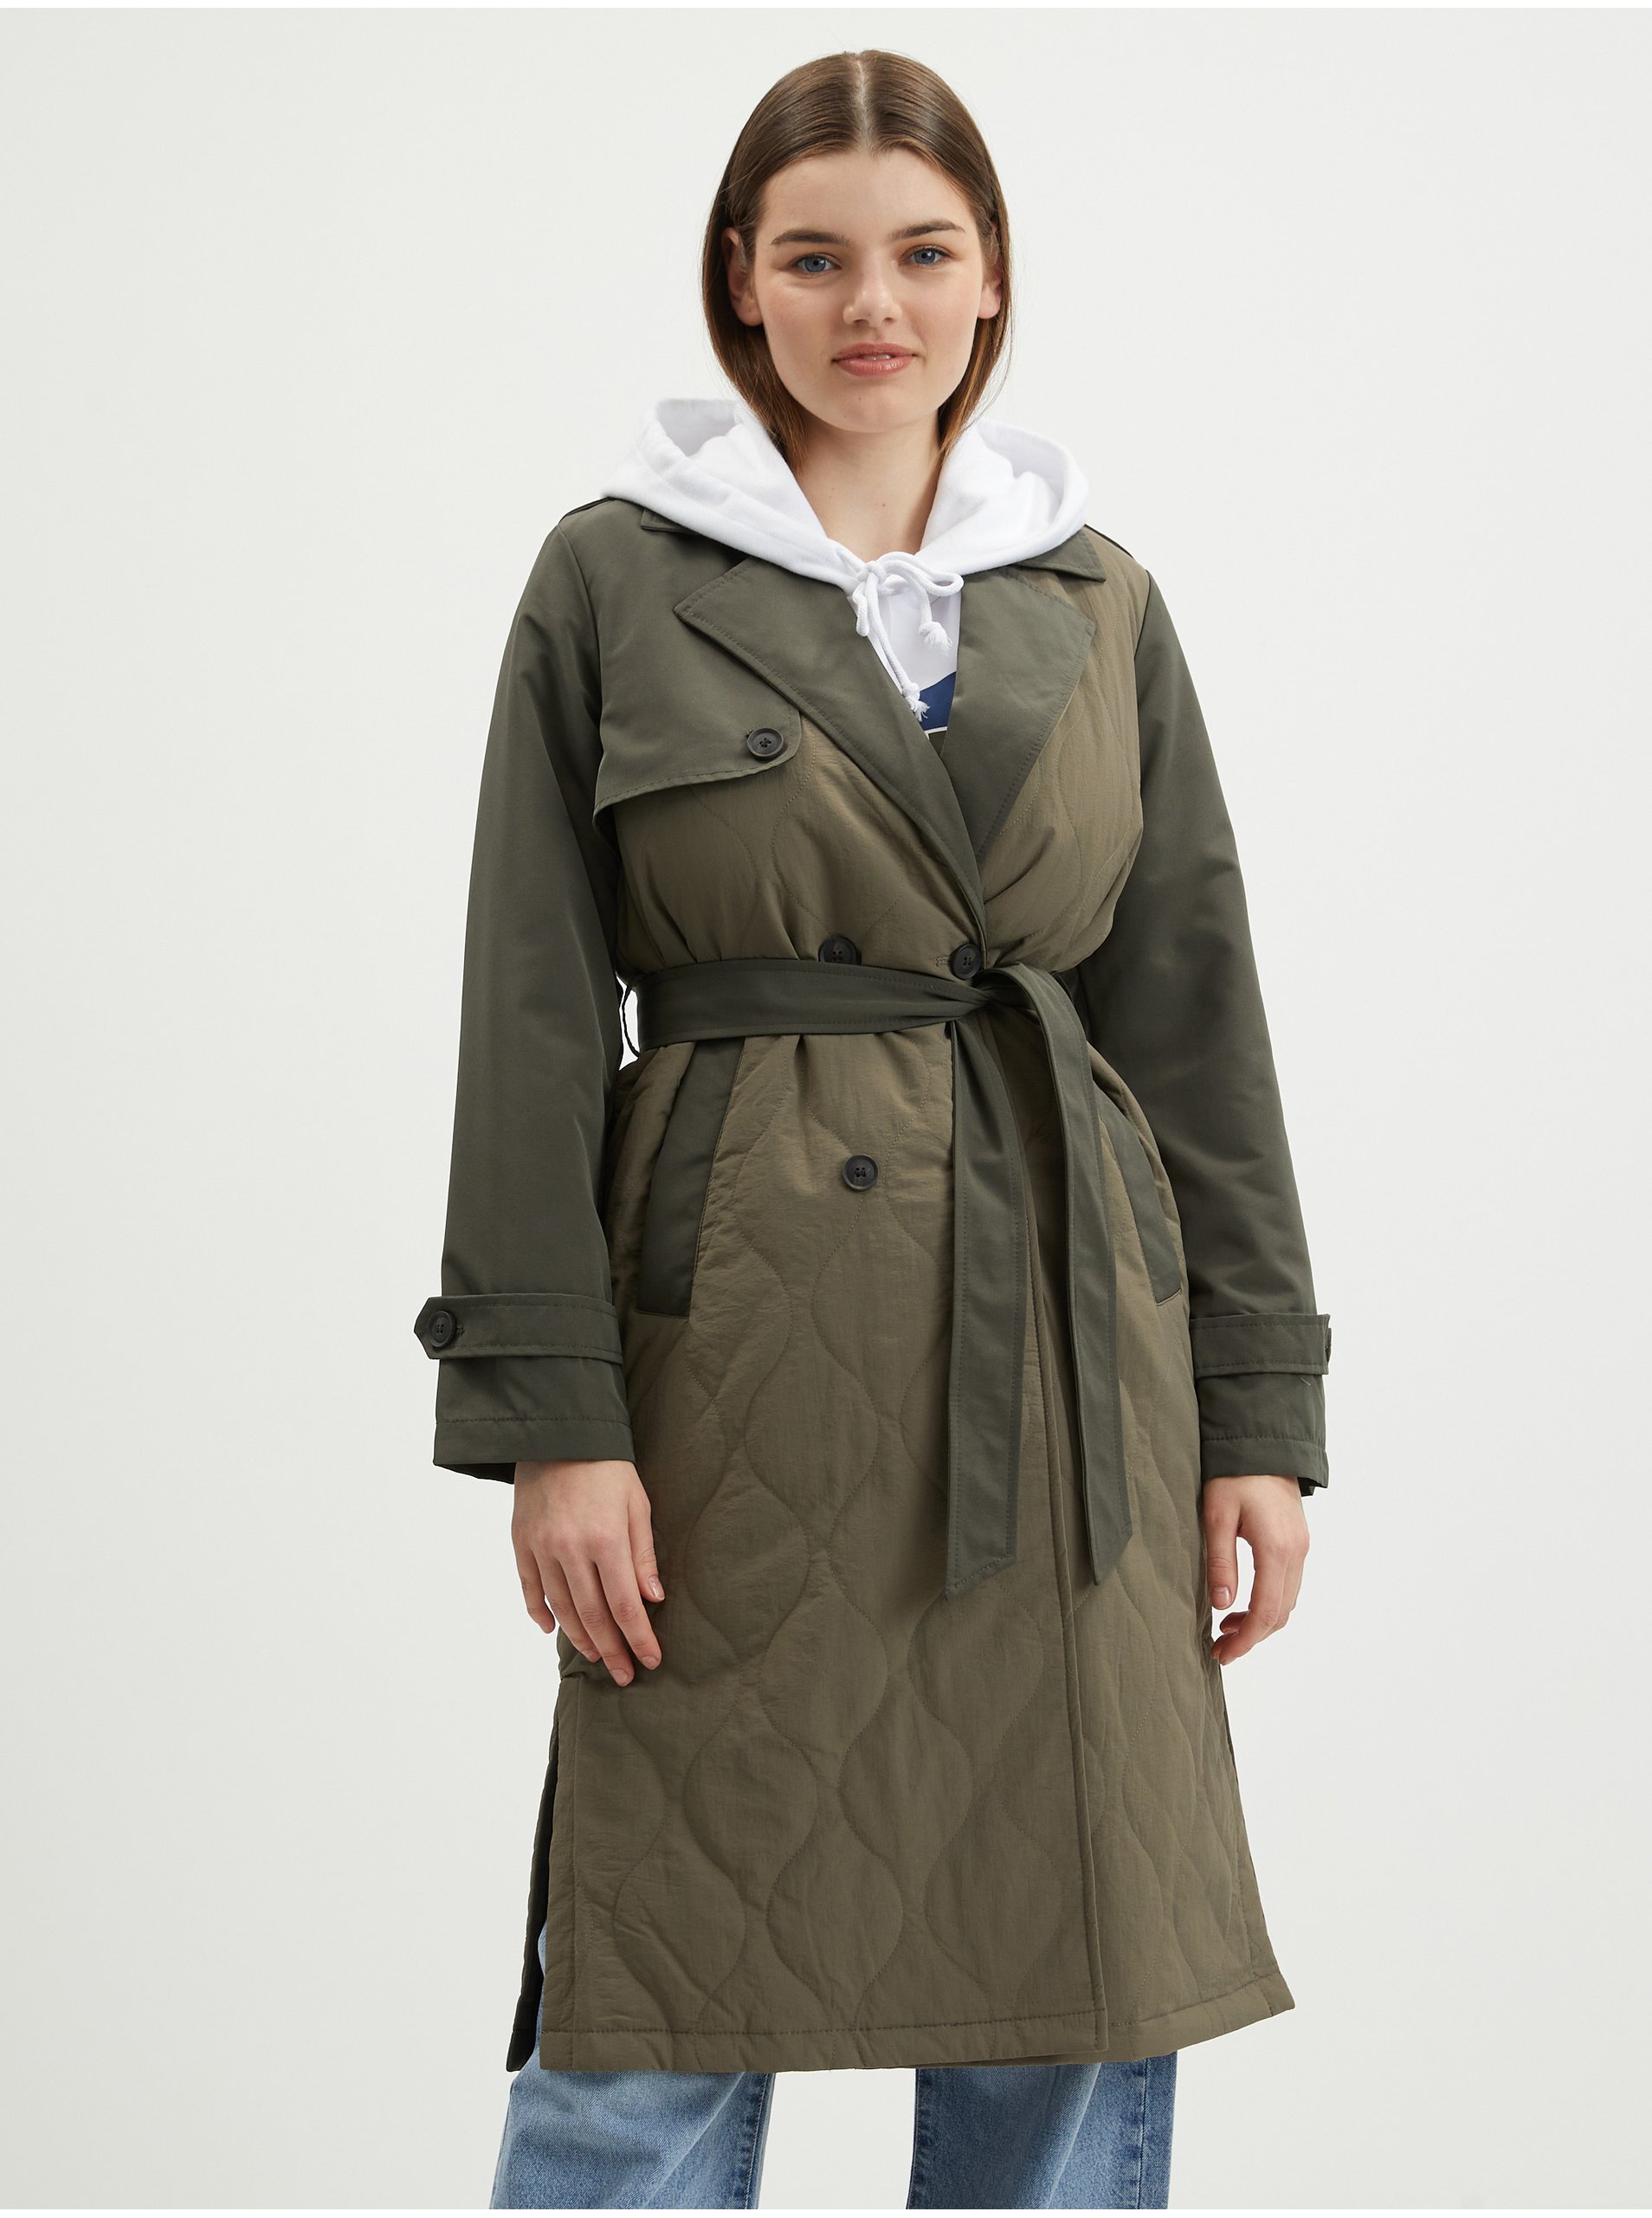 Khaki trench coat VERO MODA Sutton - Women